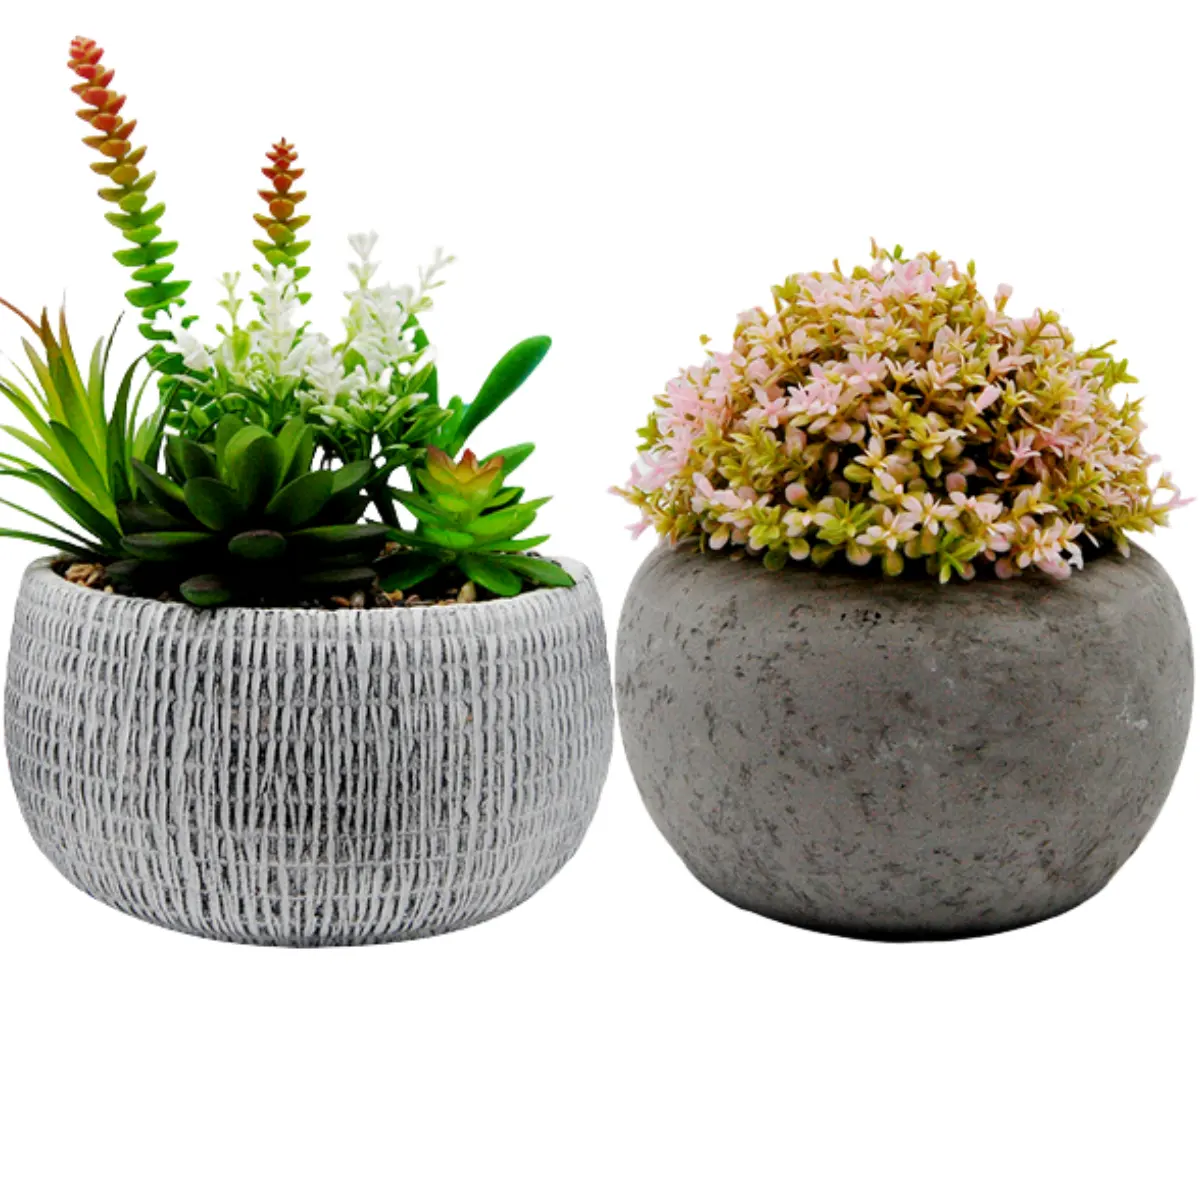 Ciotola di narciso di fiori creativa in vaso da pavimento a soffitto con fioriere in cemento vasi di fiori